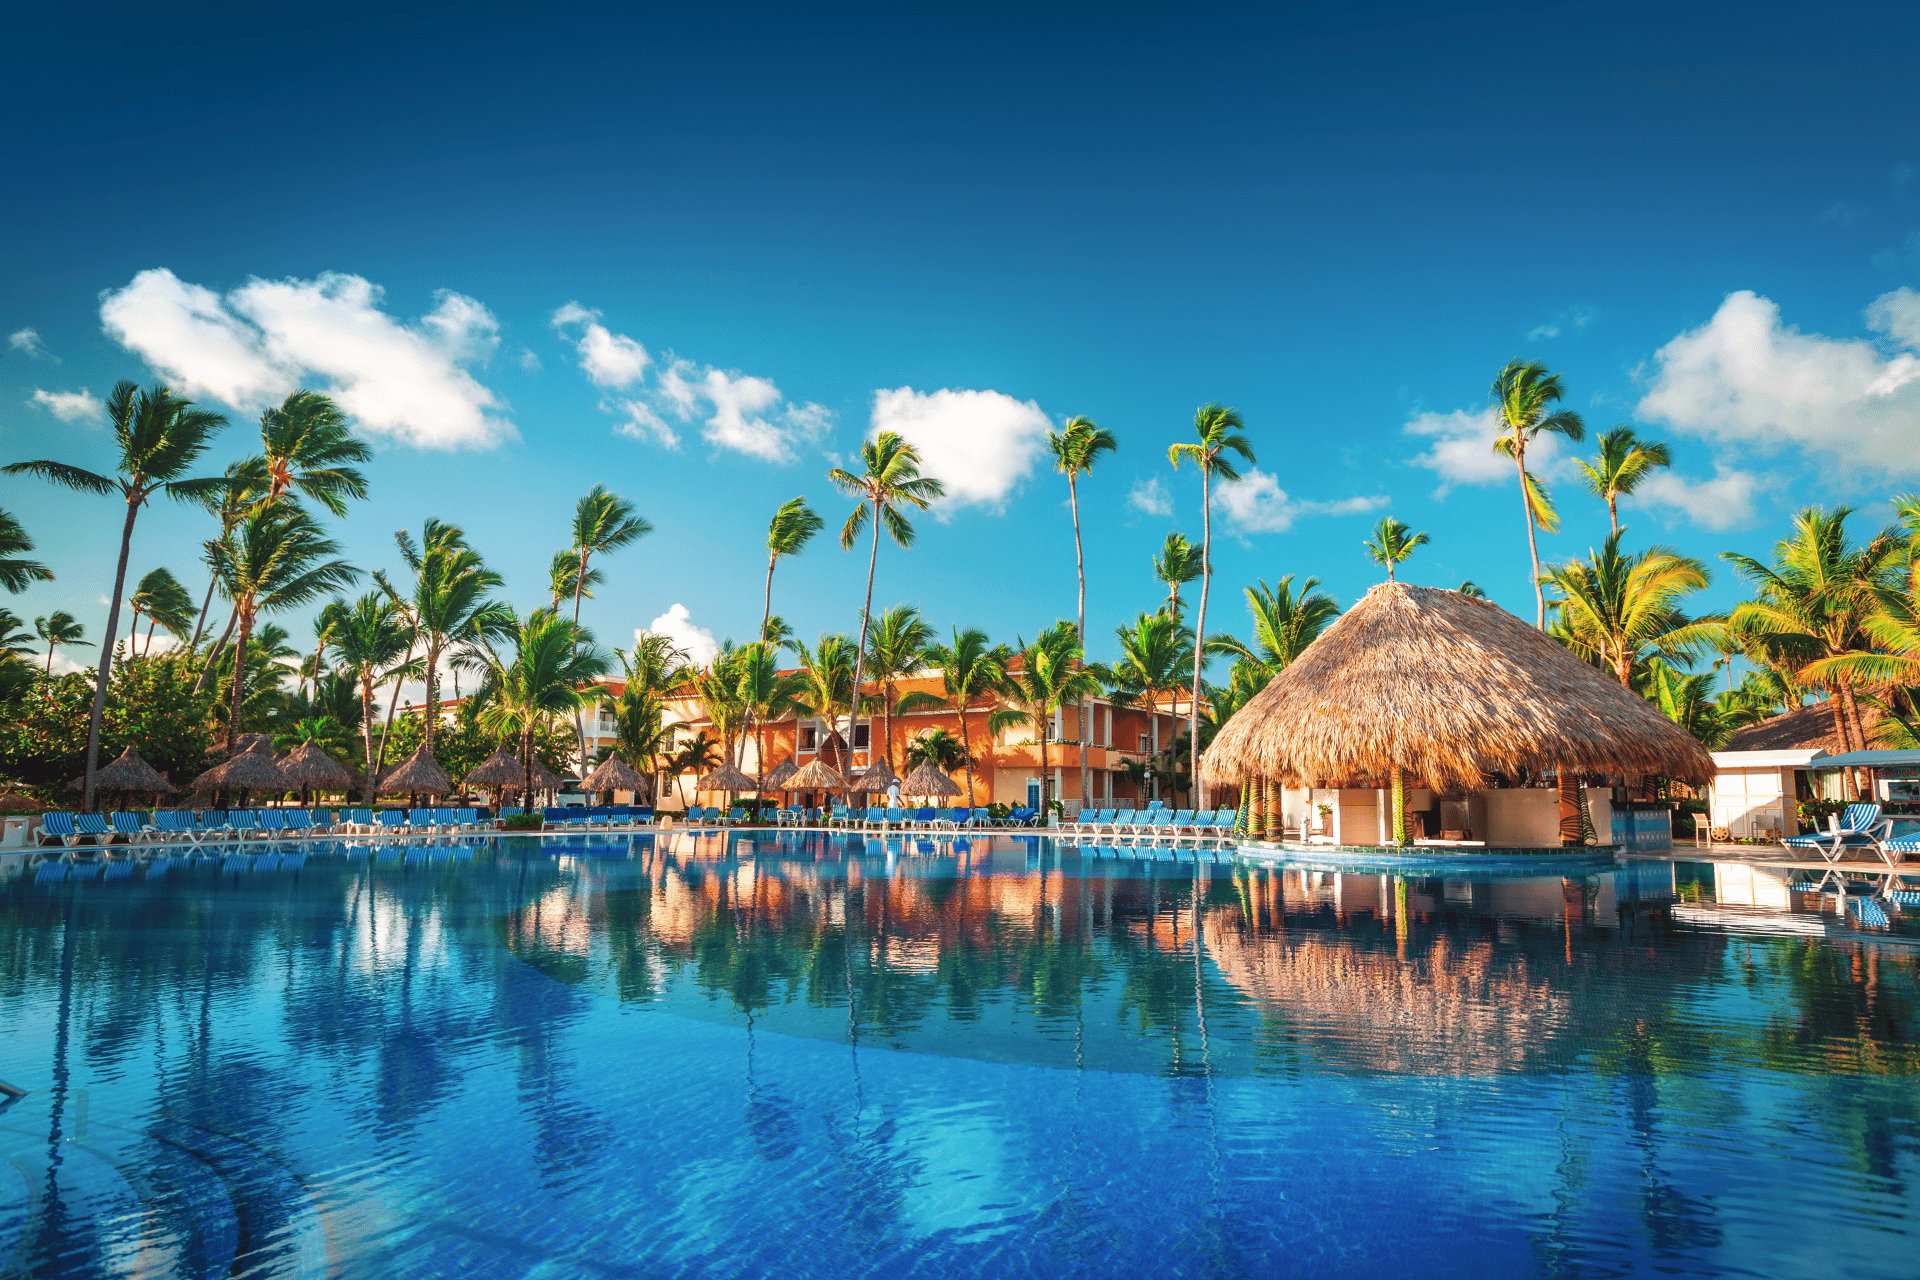 A resort in Punta Cana, Dominican Republic